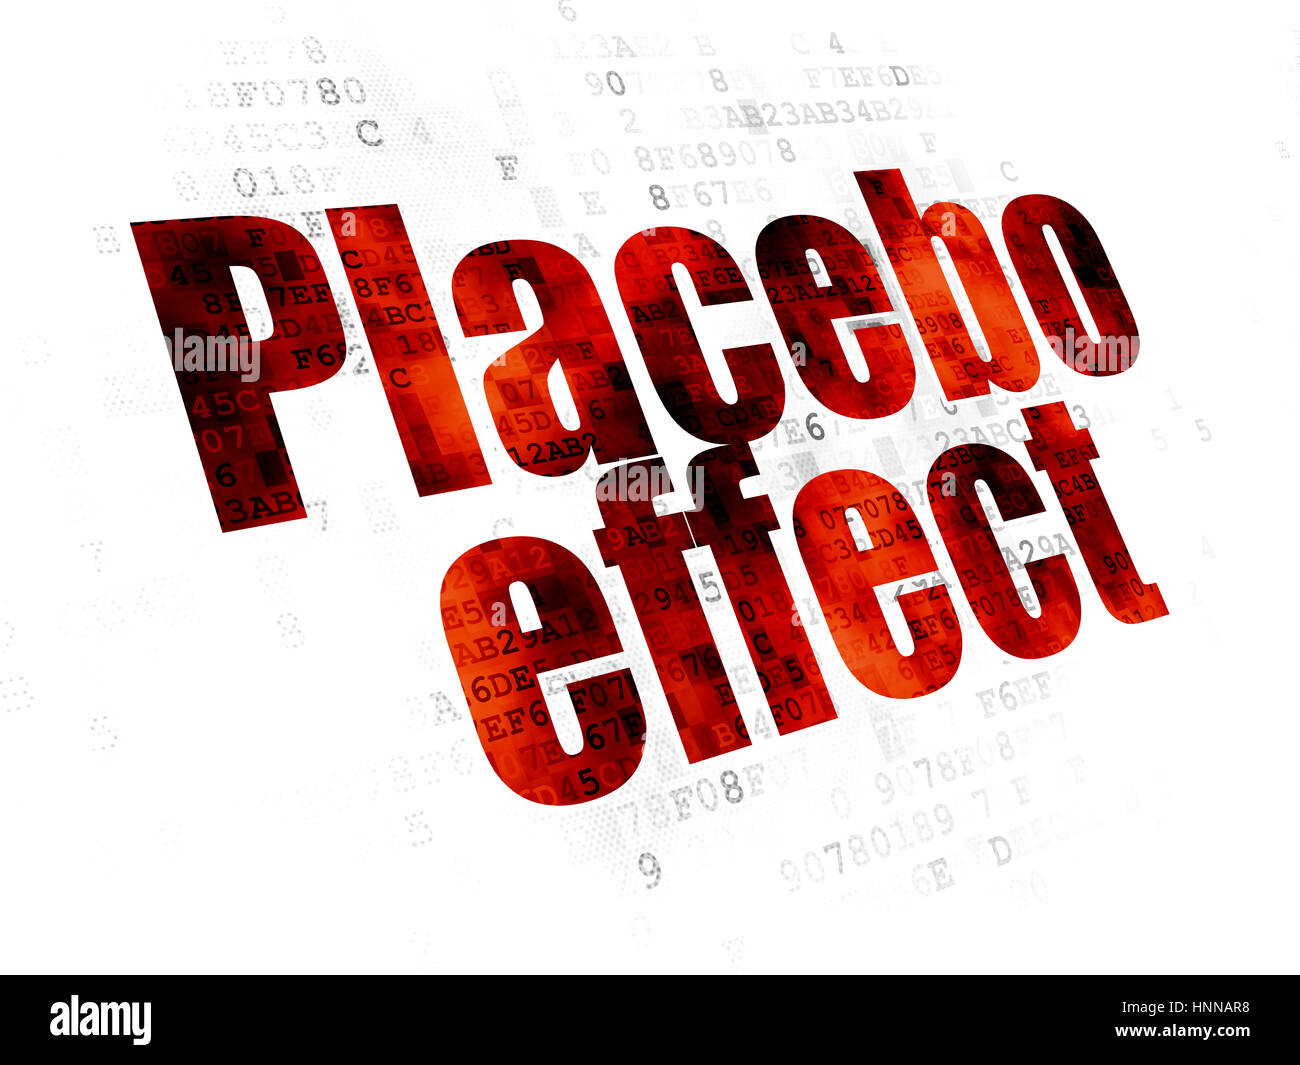 Gesundheitskonzept: Placebo-Effekt auf Digital-Hintergrund Stockfoto